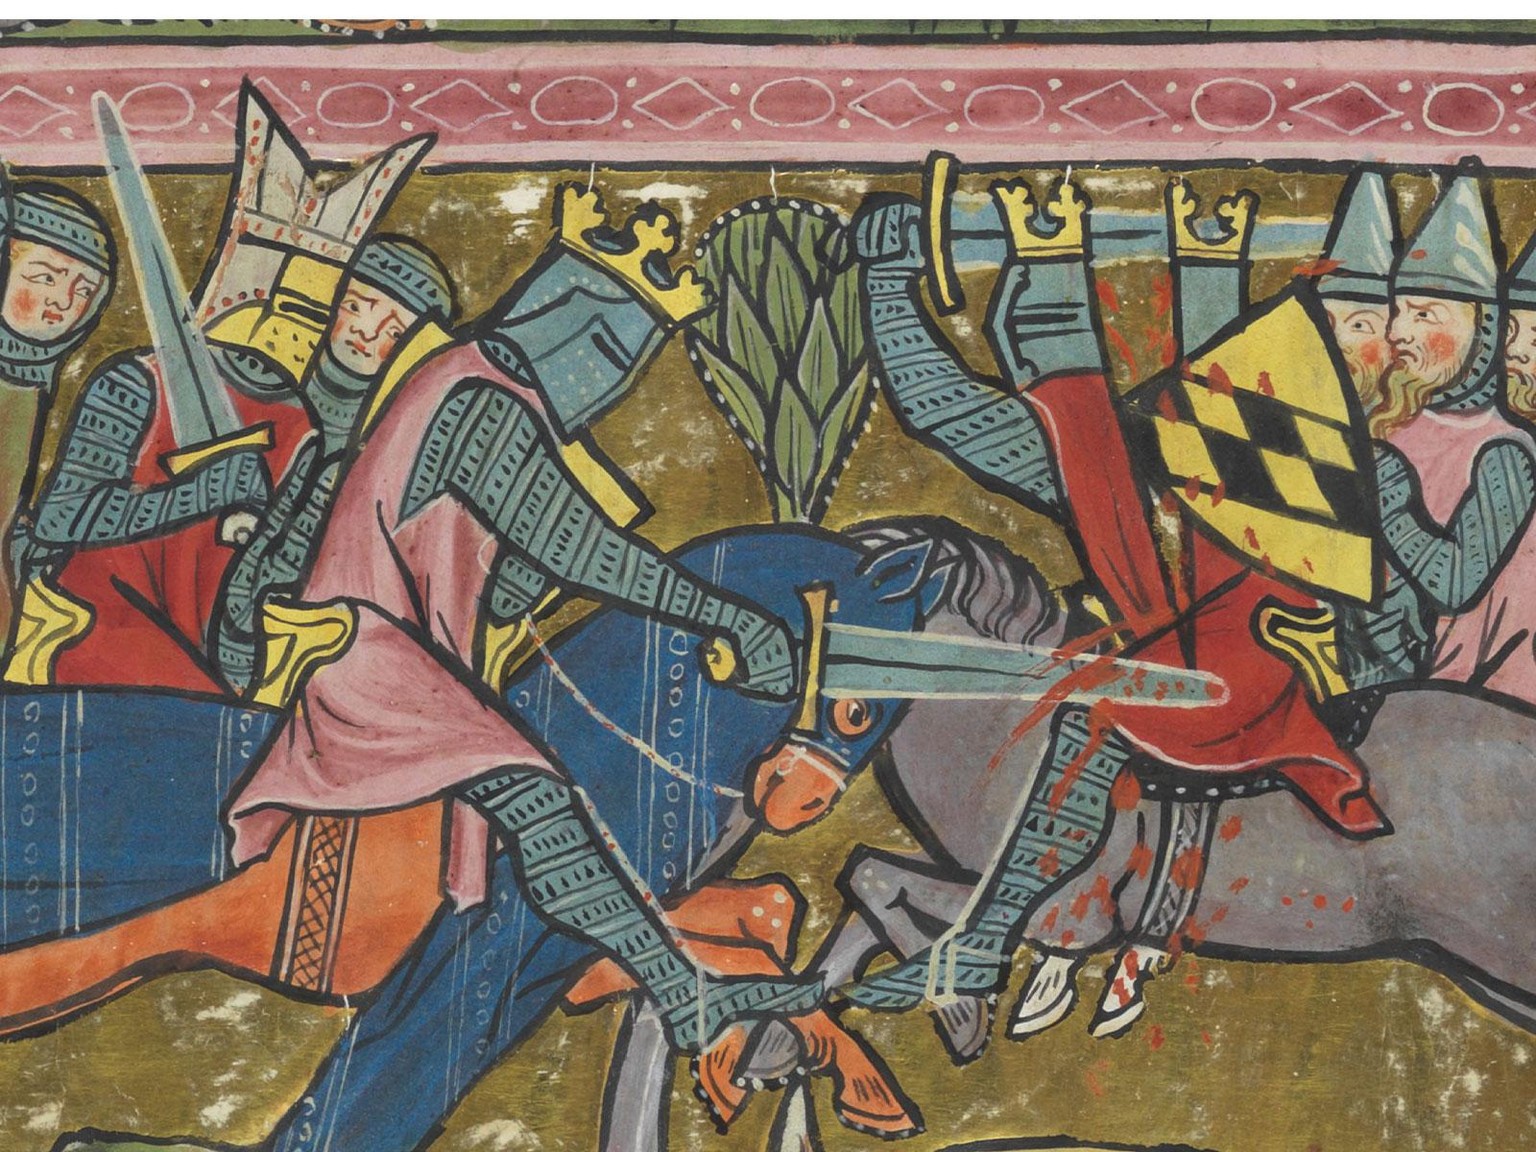 Zu keiner Waffe hatten die Ritter ein engeres Verhältnis als zu ihren Schwertern. Bild aus der Weltchronik von Rudolf von Ems, um 1300.
https://www.e-codices.unifr.ch/de/vad/0302/II_35v